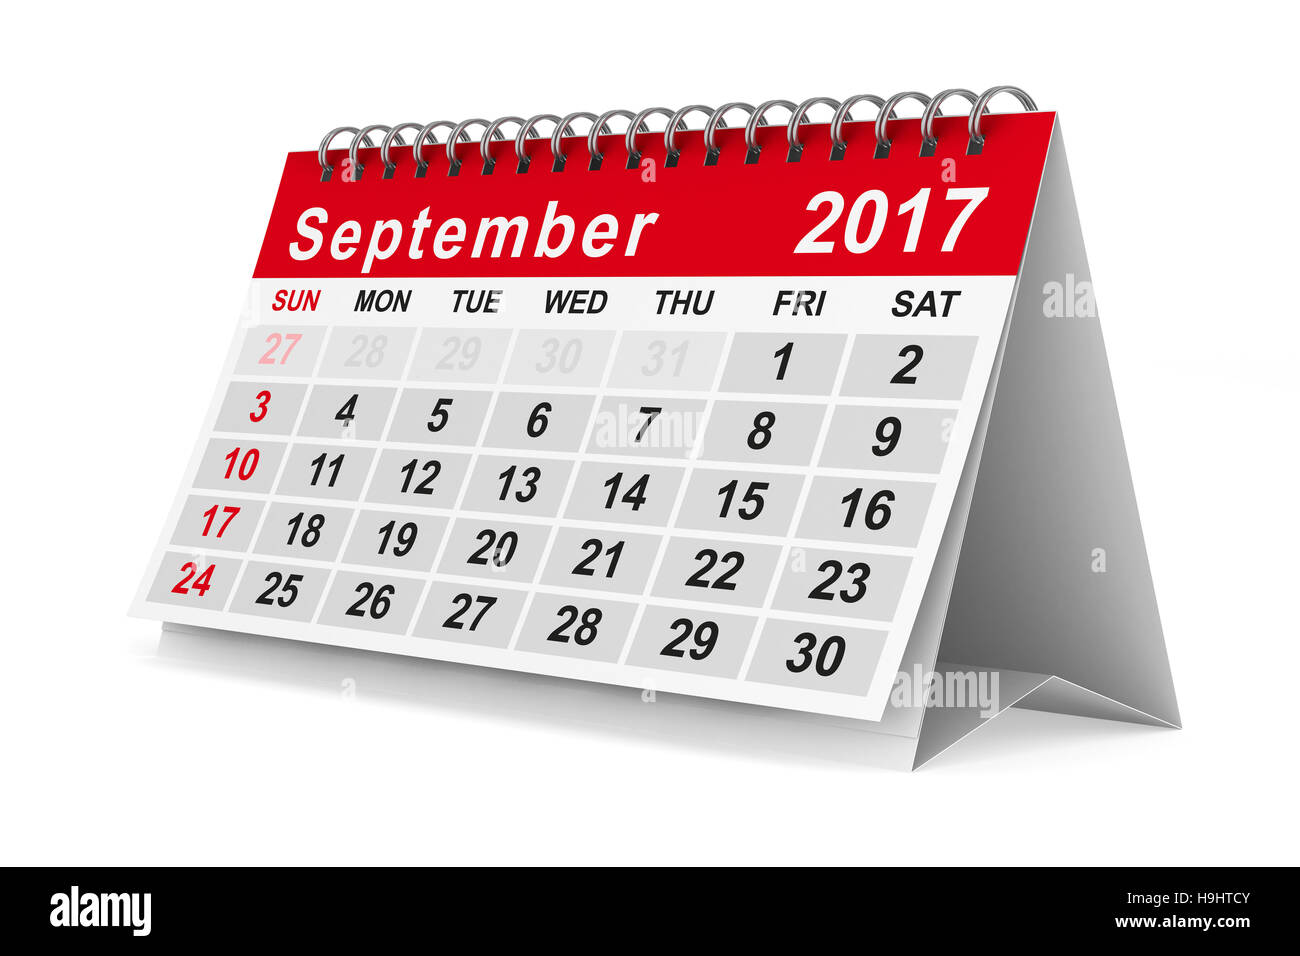 Calendrier de l'année 2017. Septembre. Image 3D isolés Banque D'Images